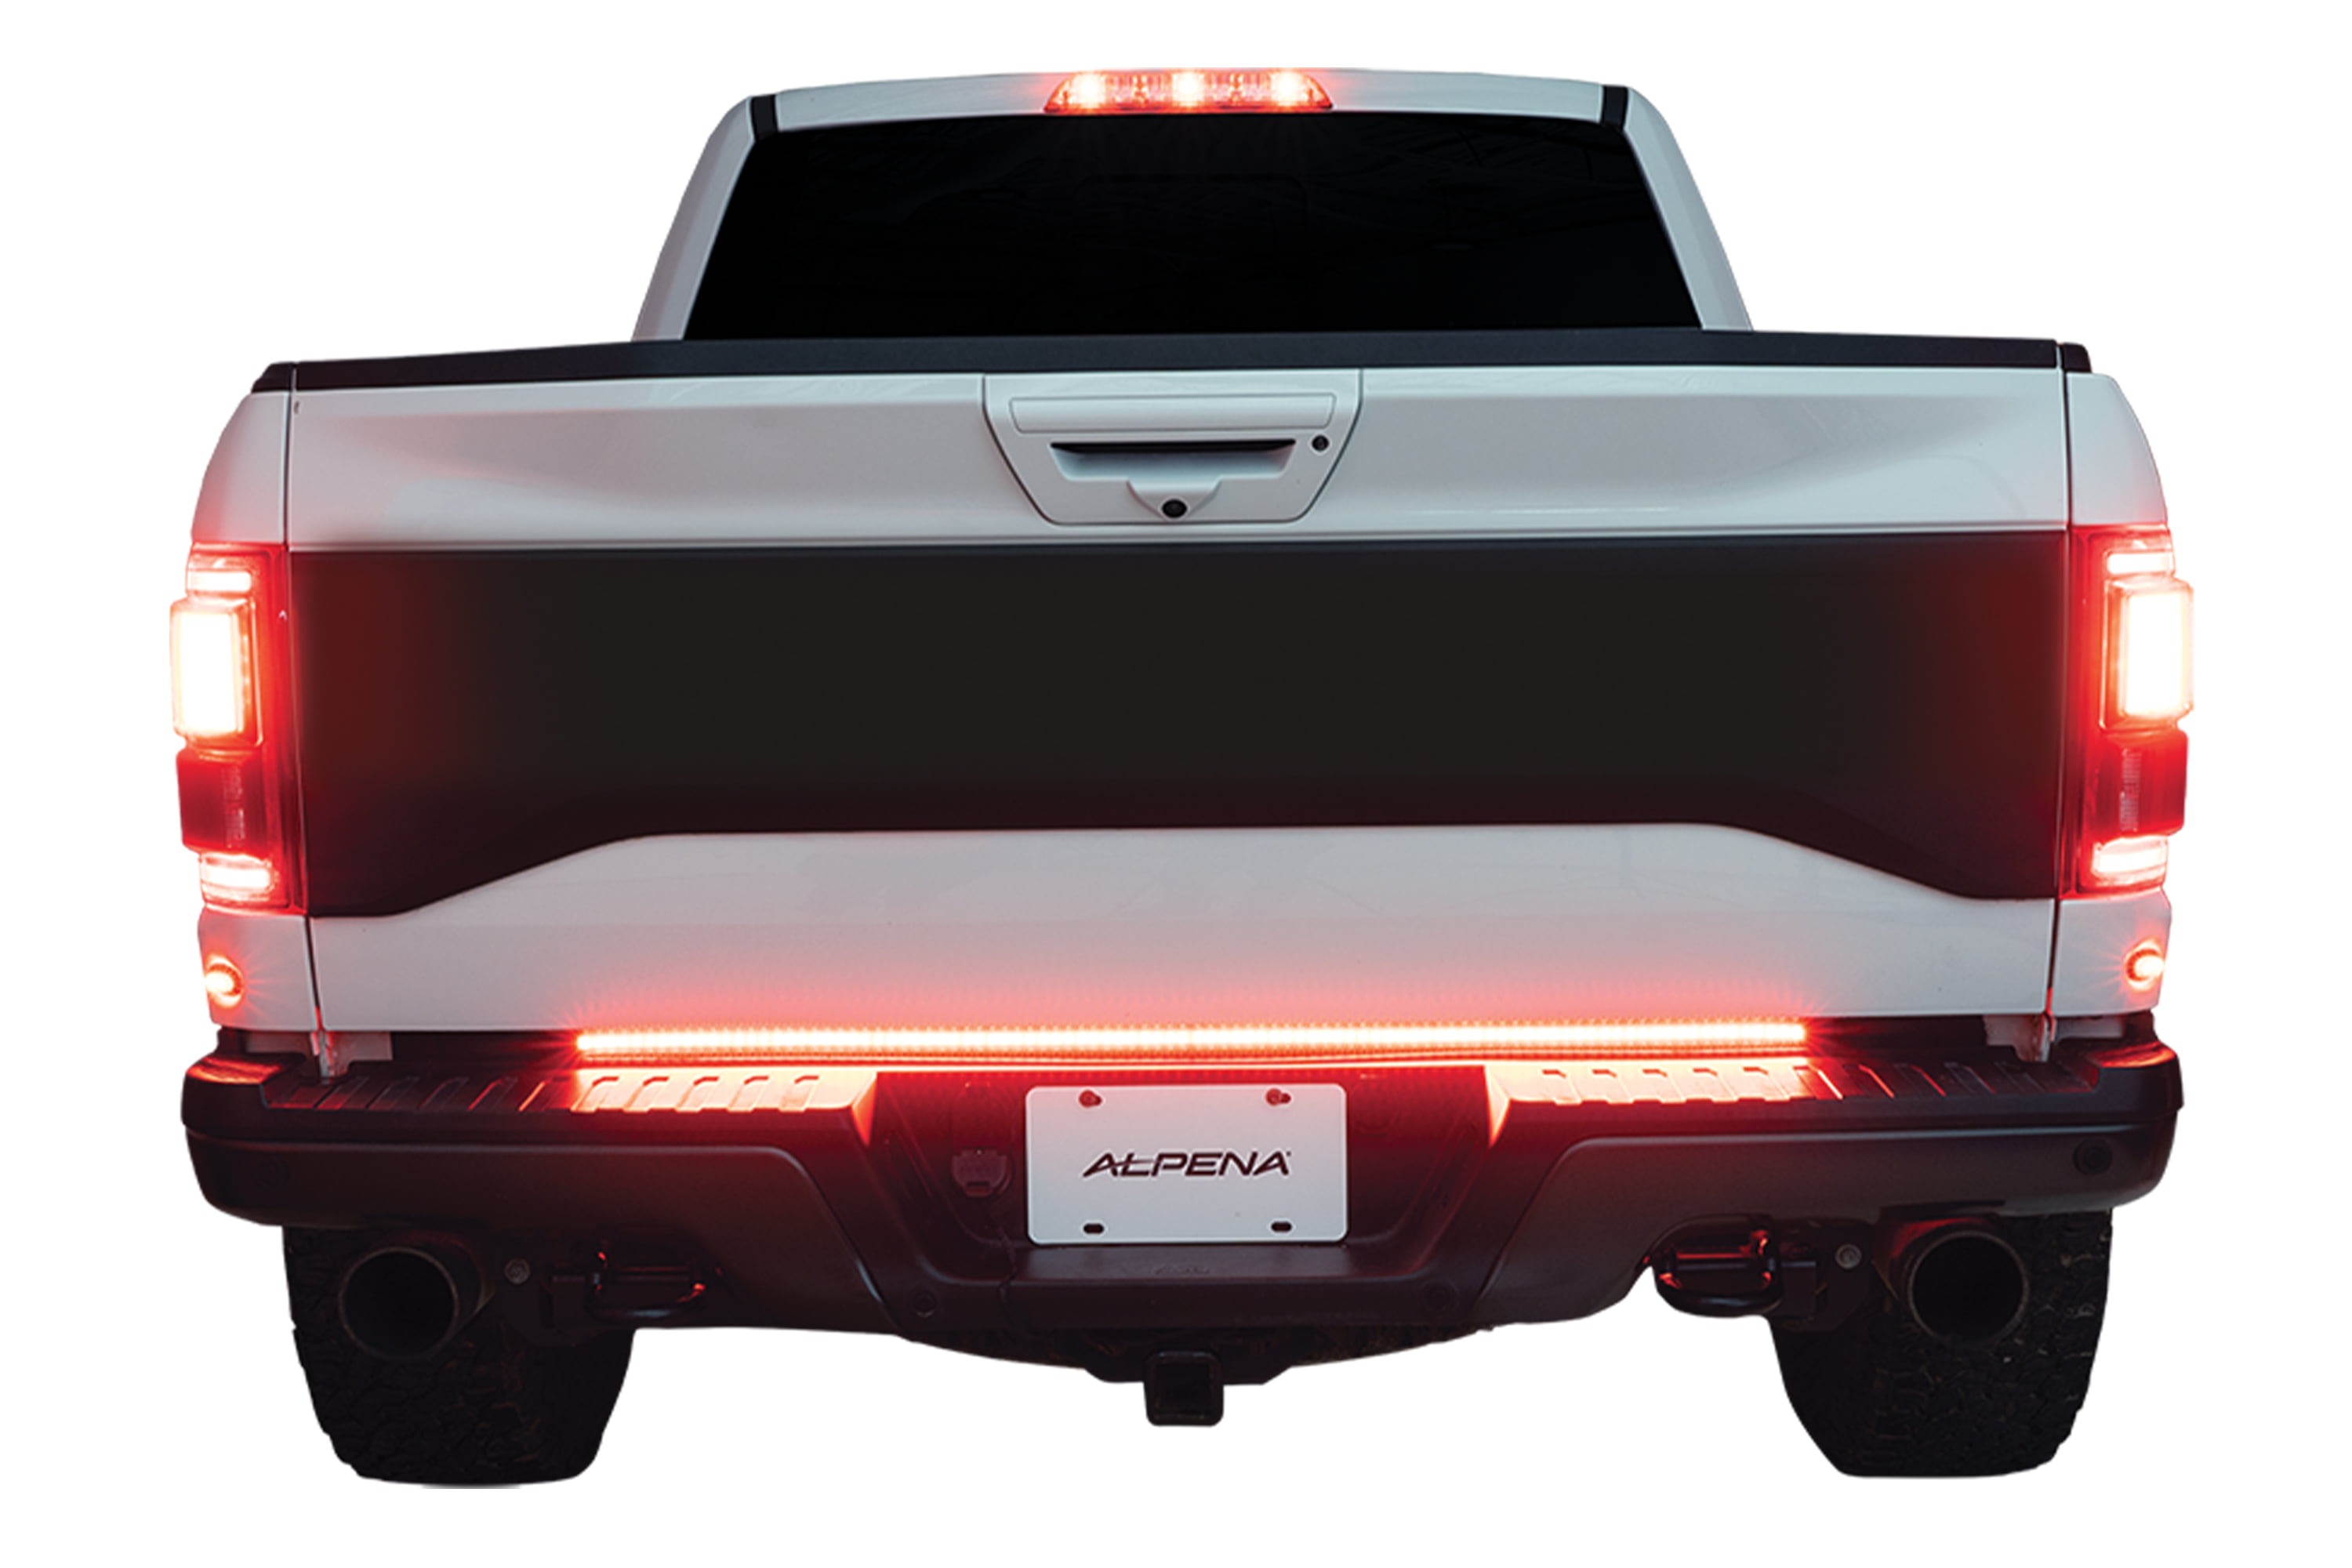 6 inch -Chrome Passenger side WITH install kit 2014 Dodge RAM C/V Post mount spotlight LED 